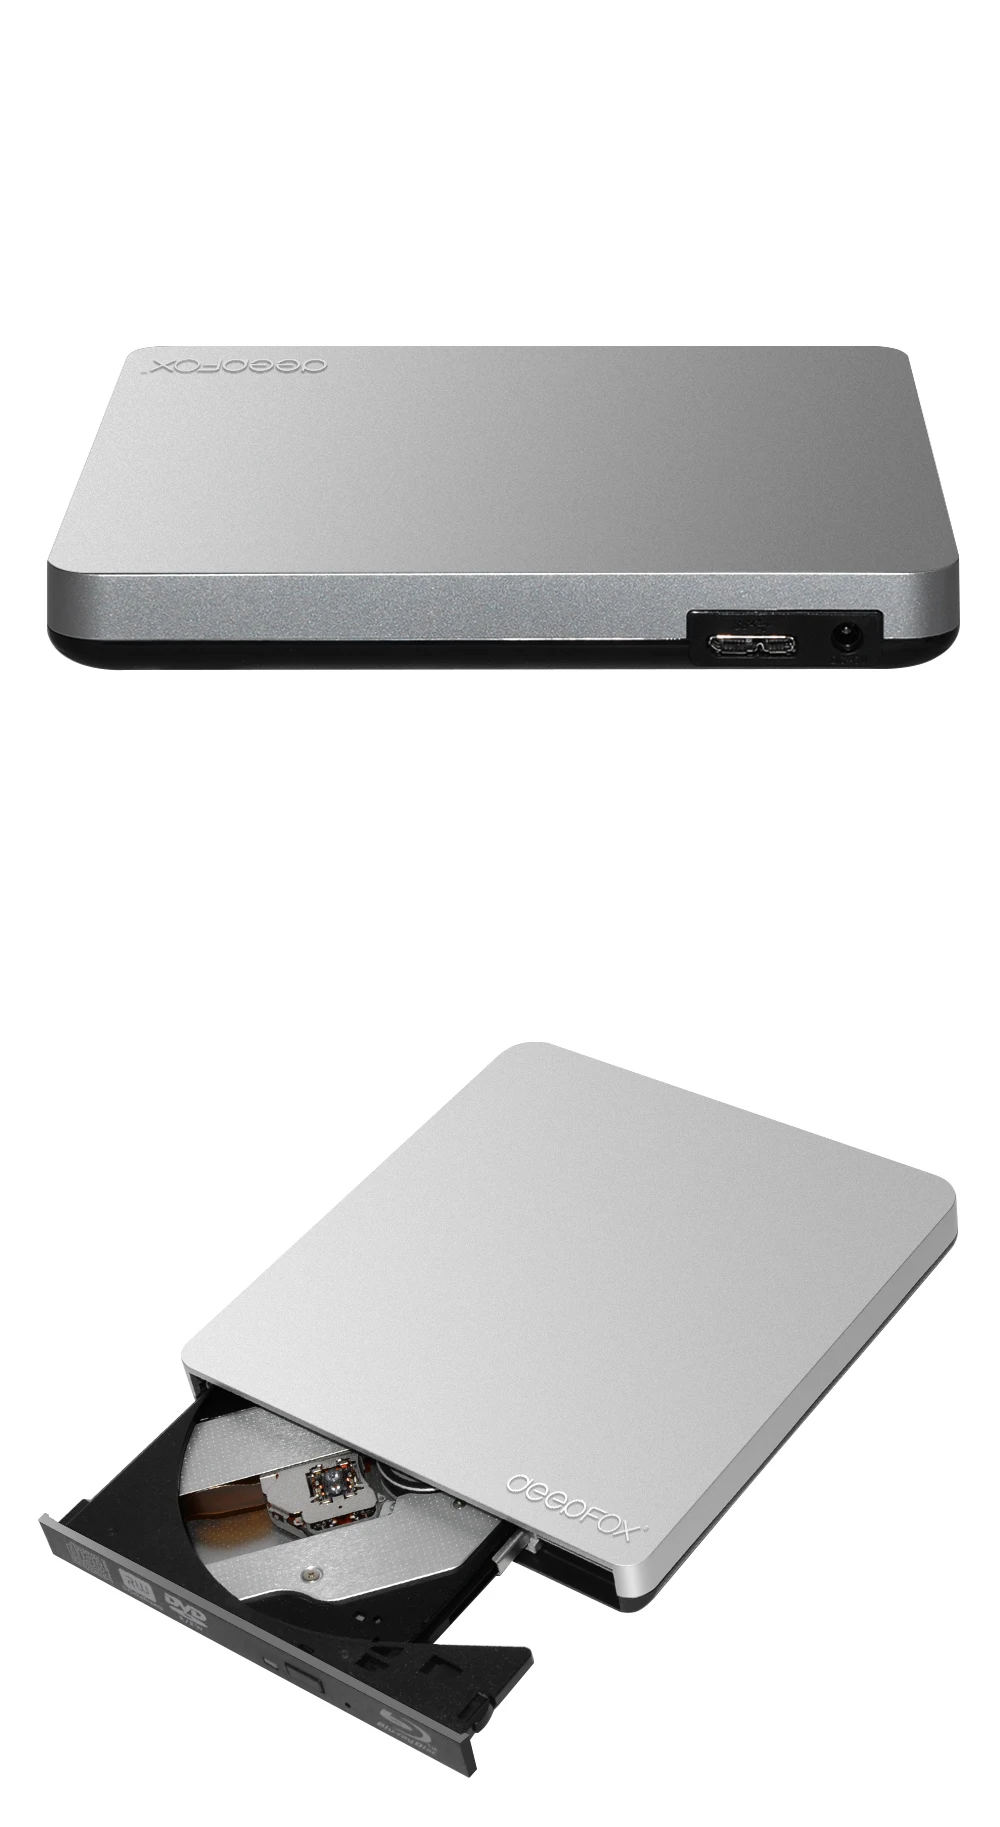 Deepfox подвижный Blu-Ray привод USB 3,0 Bluray горелка BD-RE CD/DVD RW запись и воспроизведение 3D 4K Blu-Ray диск для ноутбука